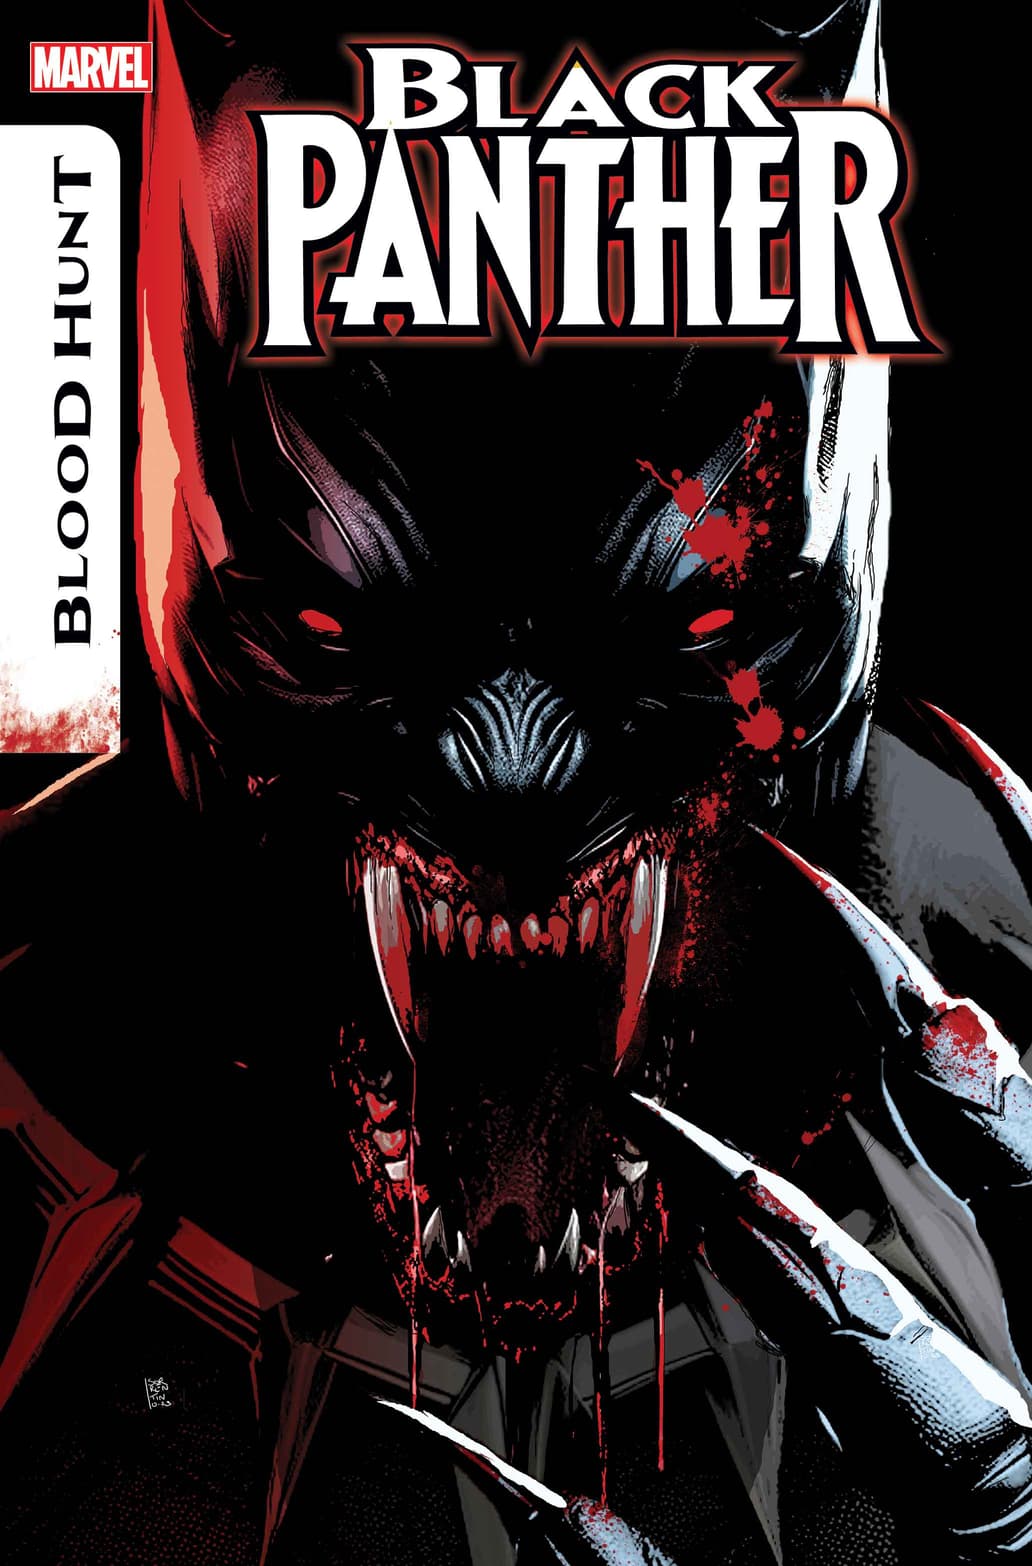 Black Panther: Blood Hunt #1 cover art